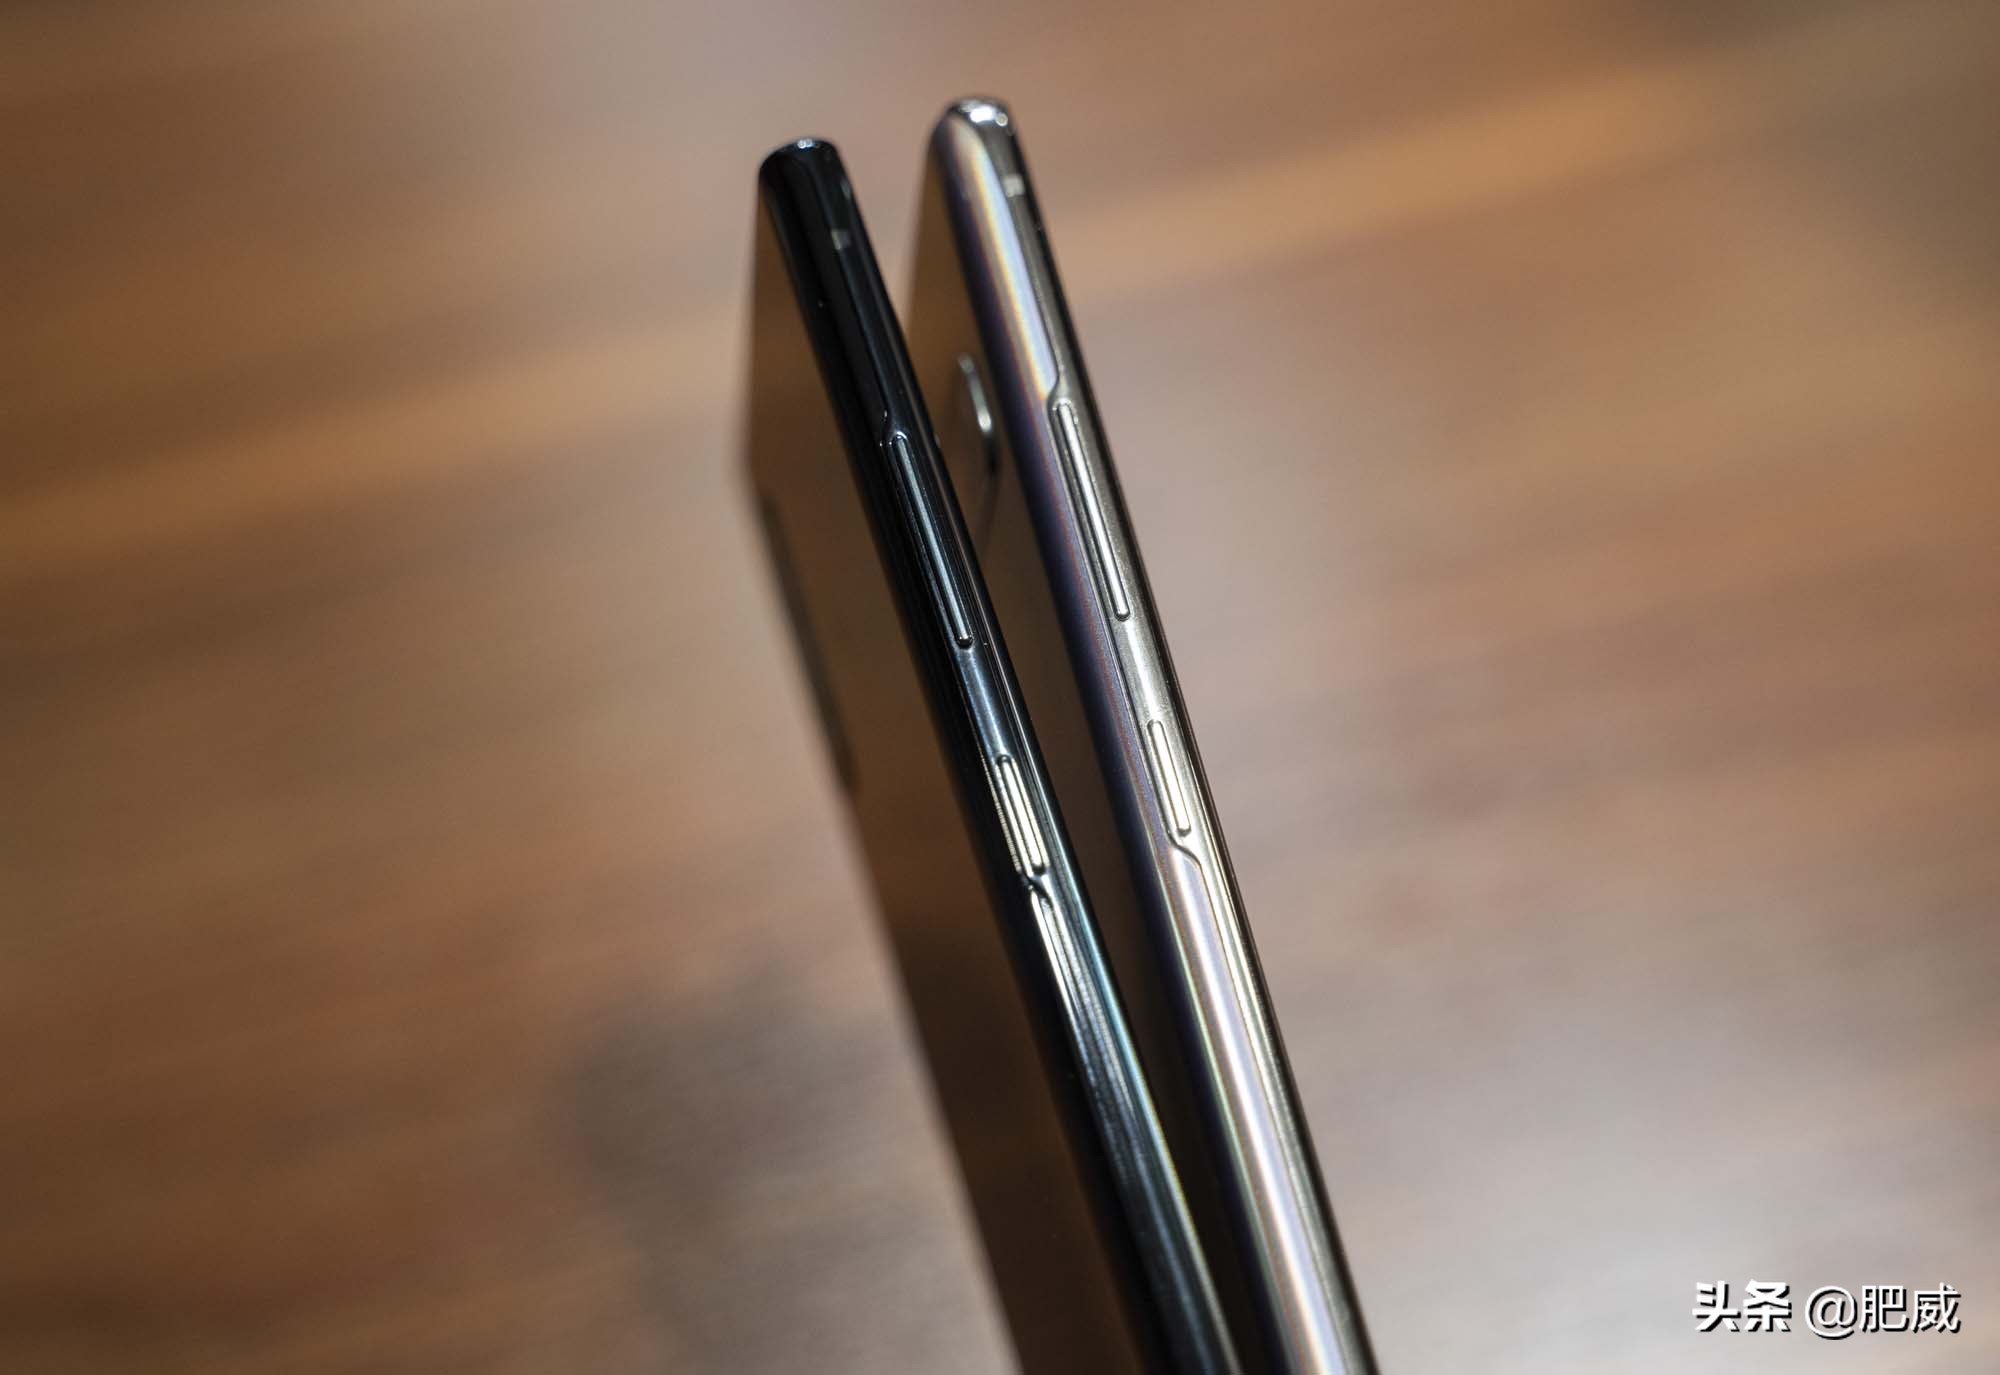 双子旗舰 三星Galaxy Note10系列上手体验